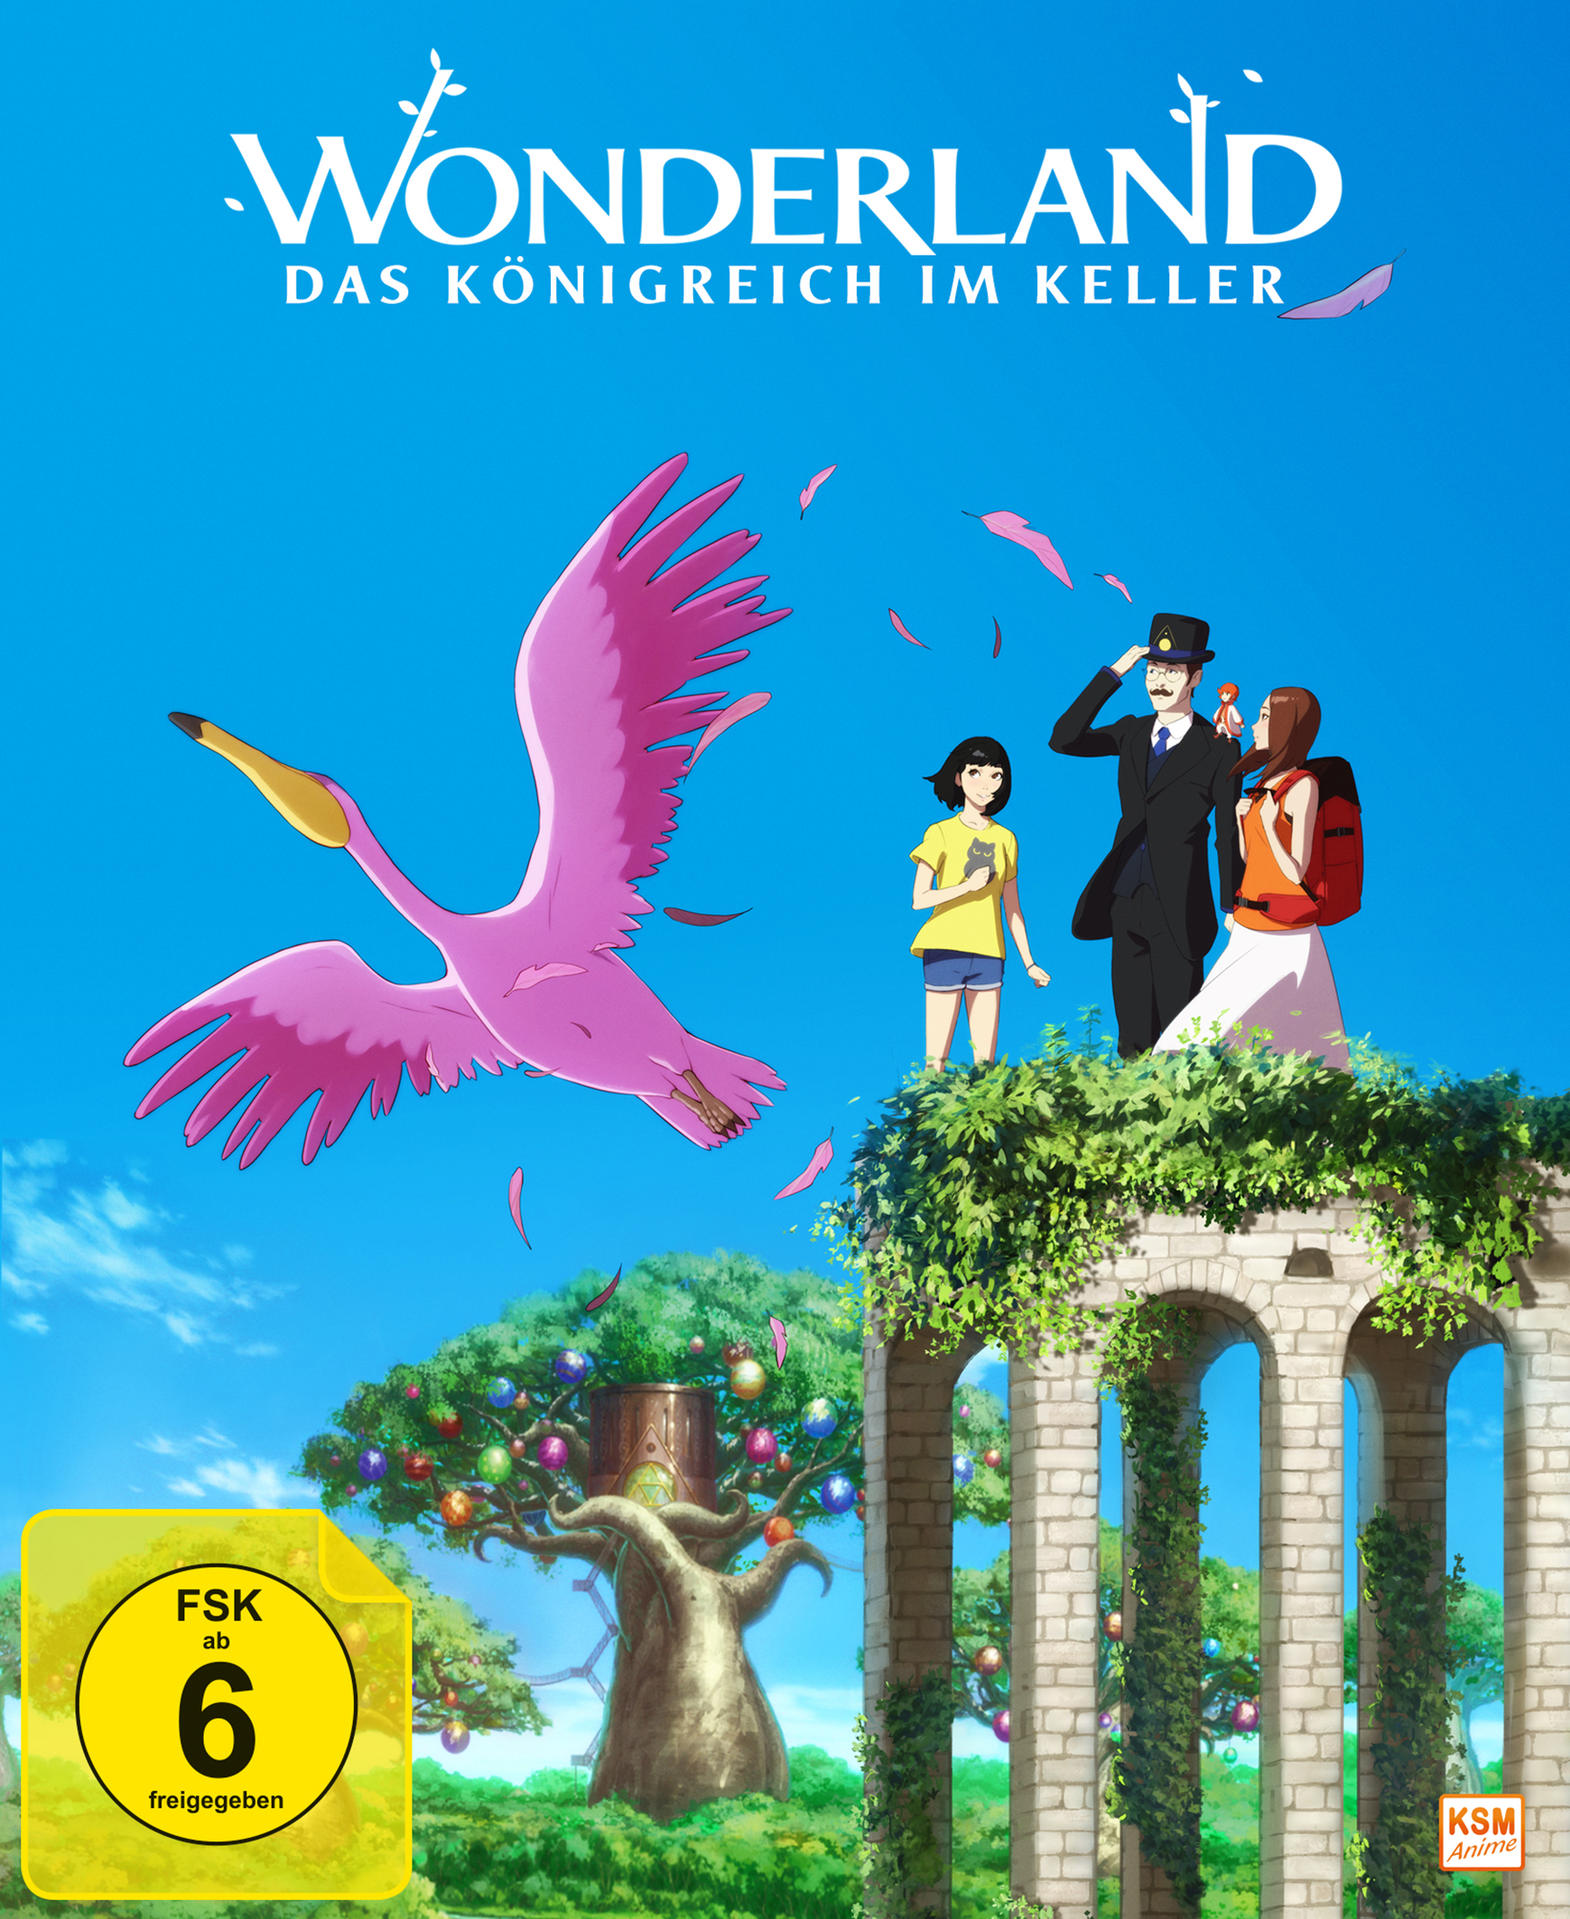 Blu-ray im Das Wonderland Königreich - Keller